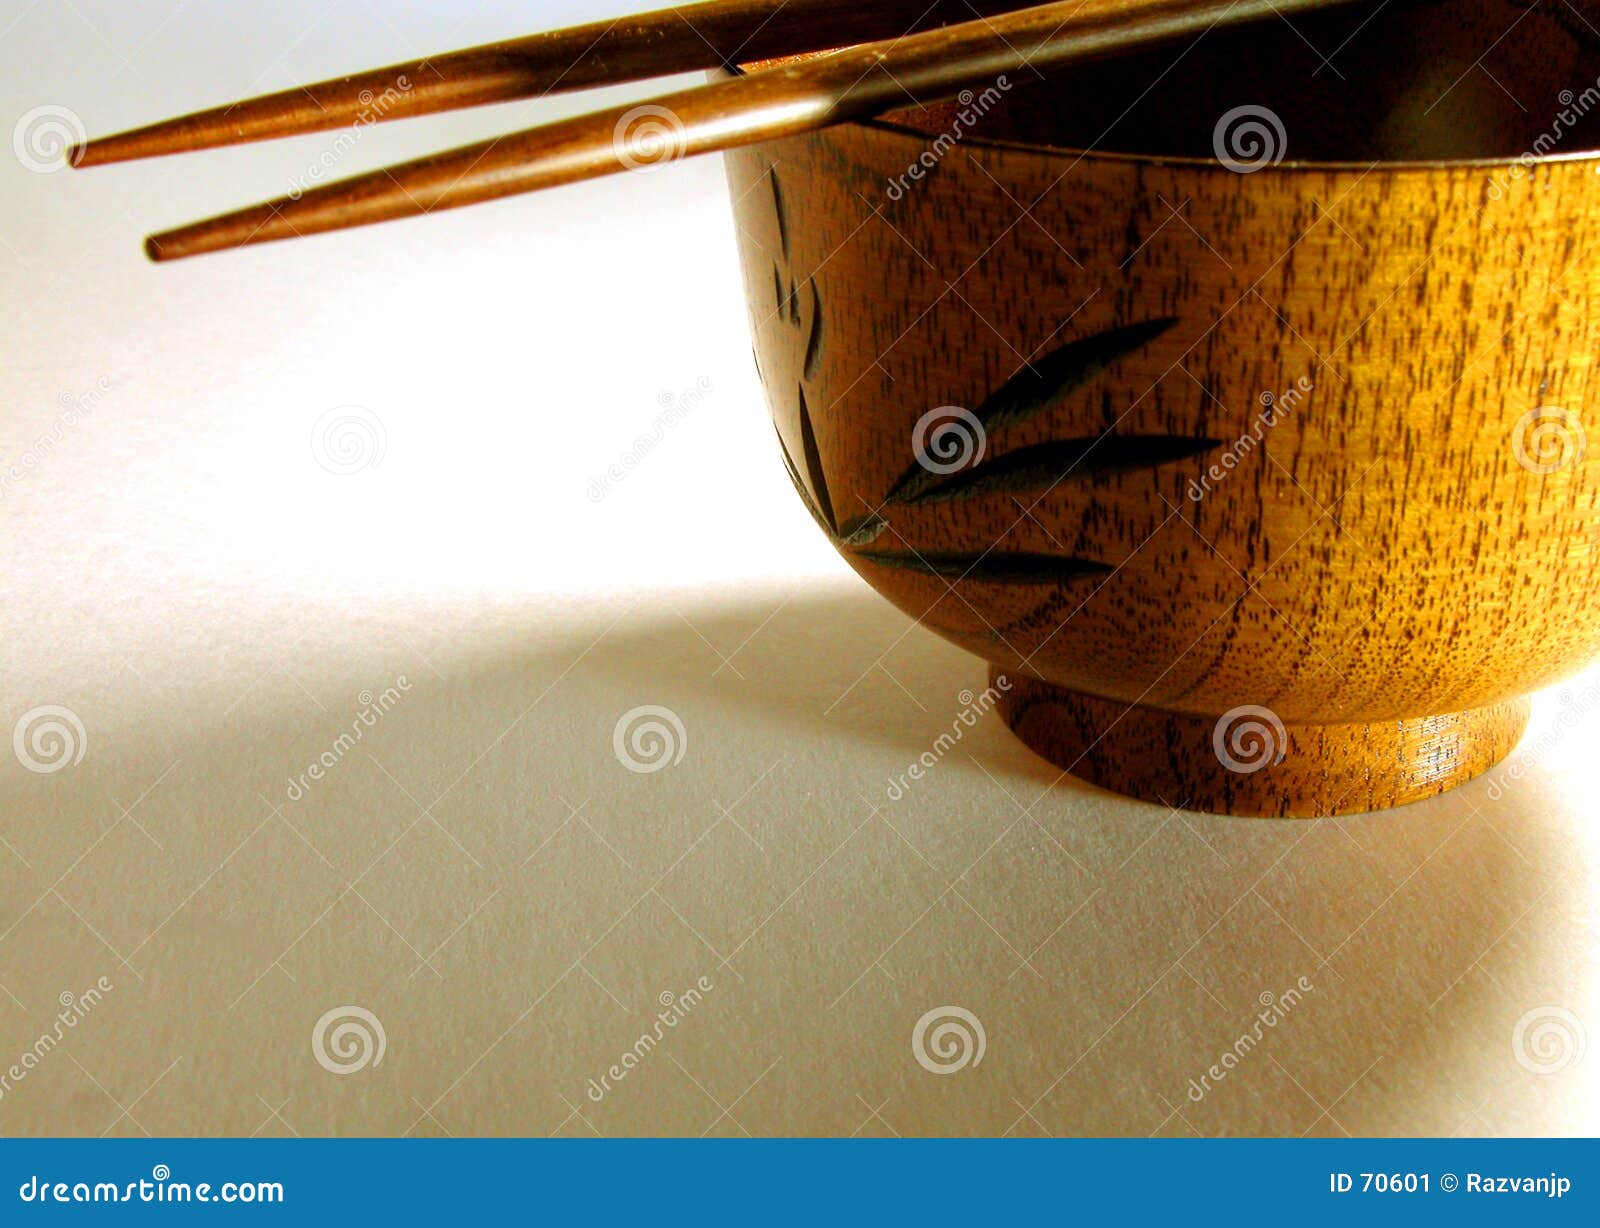 Sombras asiáticas. Un tazón de fuente de madera, dos palillos y una iluminación interesante.